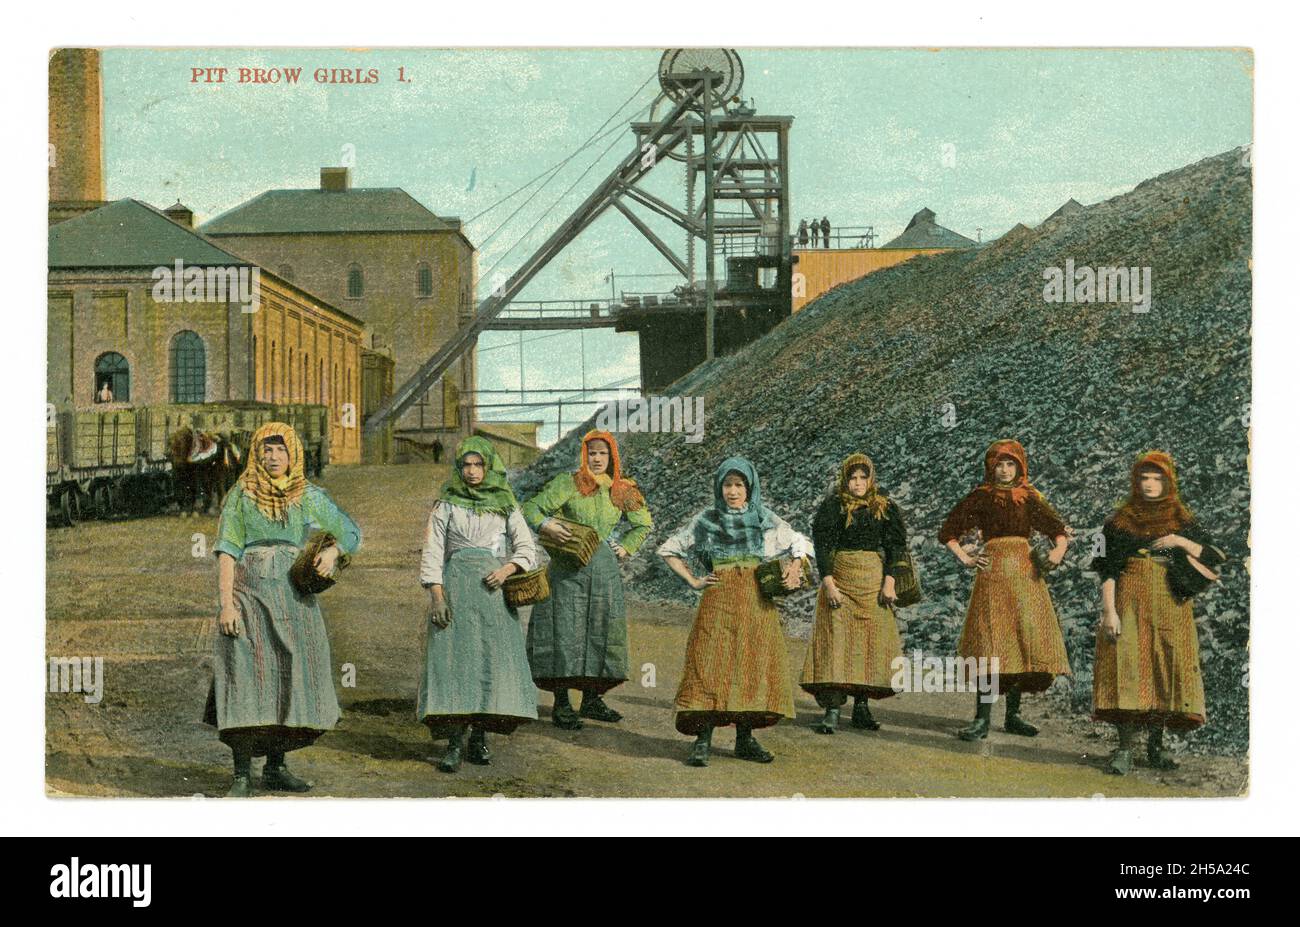 Originale inizio 1900 's cartolina di pit brow ragazze che indossano foulard, abiti da lavoro, alla testa della buca, Wigan Junction Colliery, Lancashire, Inghilterra, Regno Unito pubblicato in 1911 ma immagine da circa 1905. Foto Stock